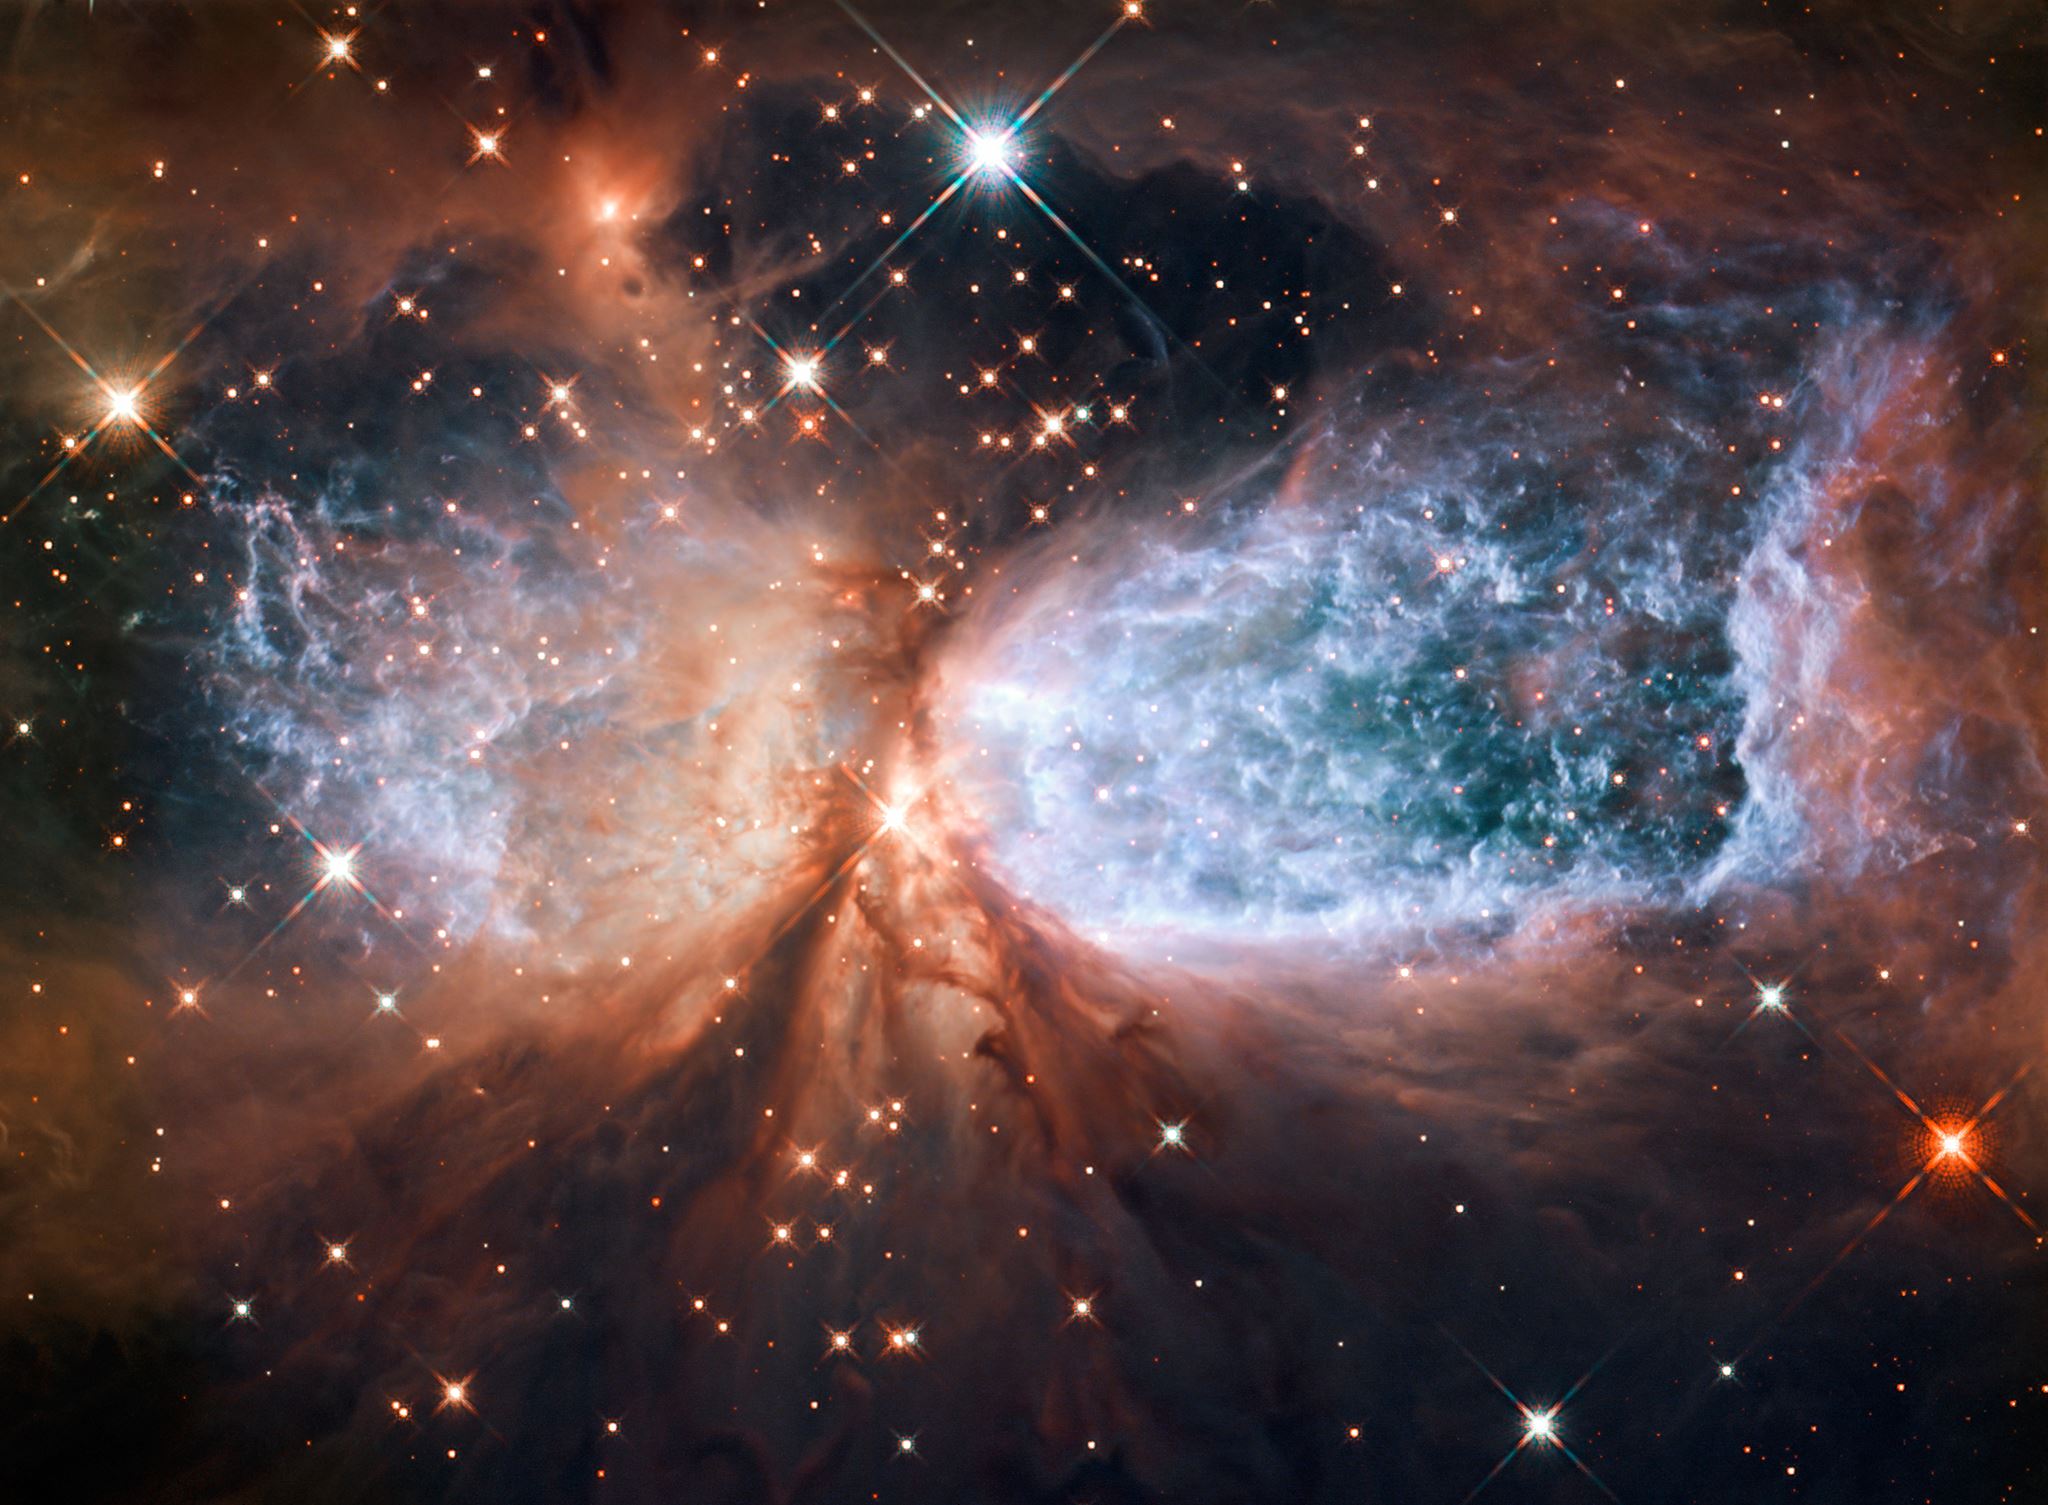 Hubble teleskobu ile cekilen gorsel